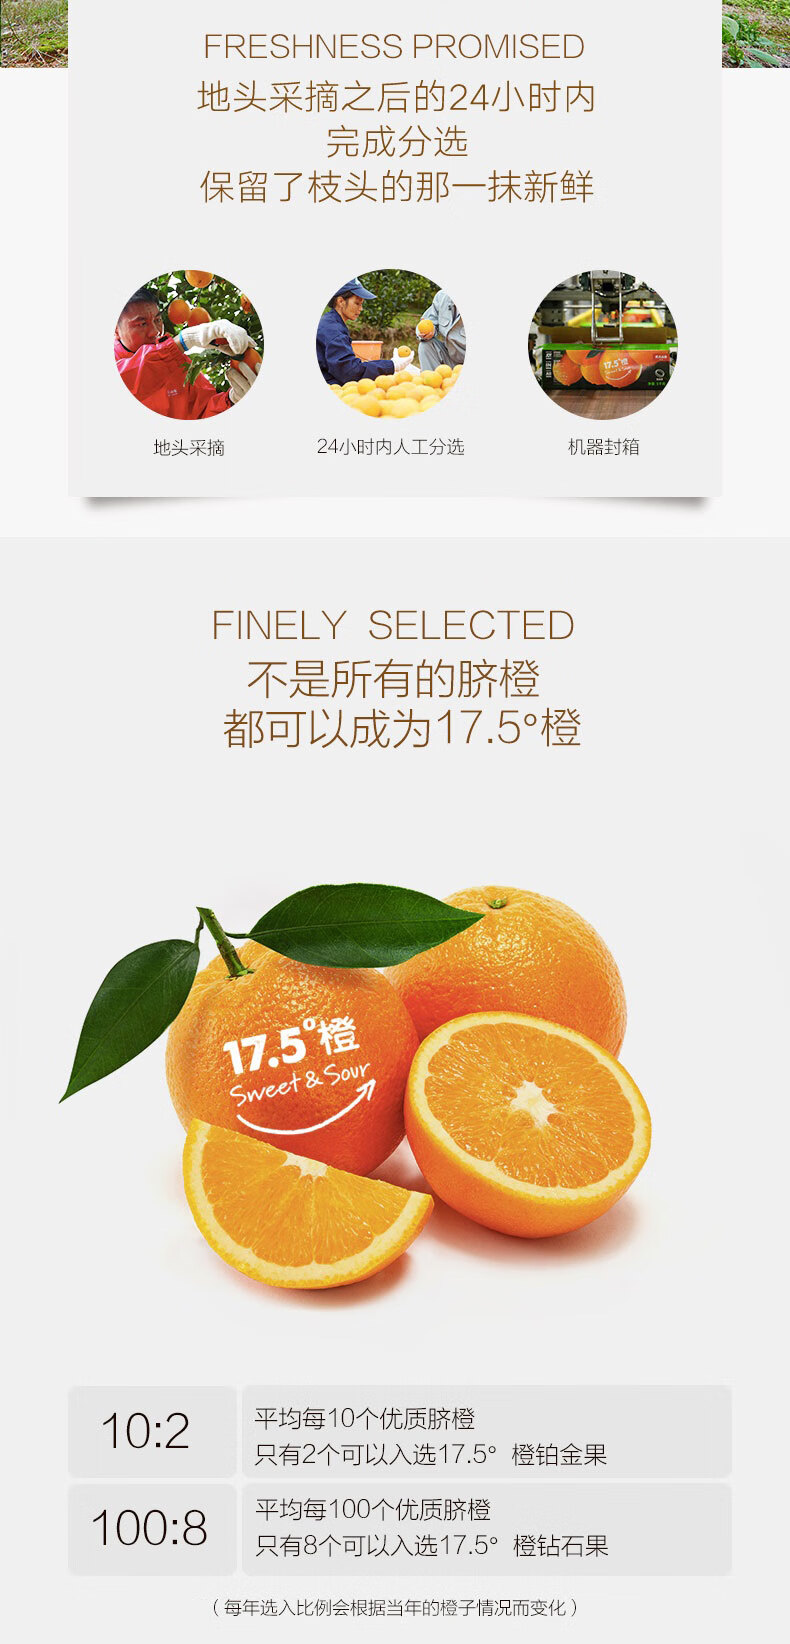 【预售】农夫山泉 17.5°橙子 赣南脐橙 新鲜橙子 水果礼盒 5kg钻石果